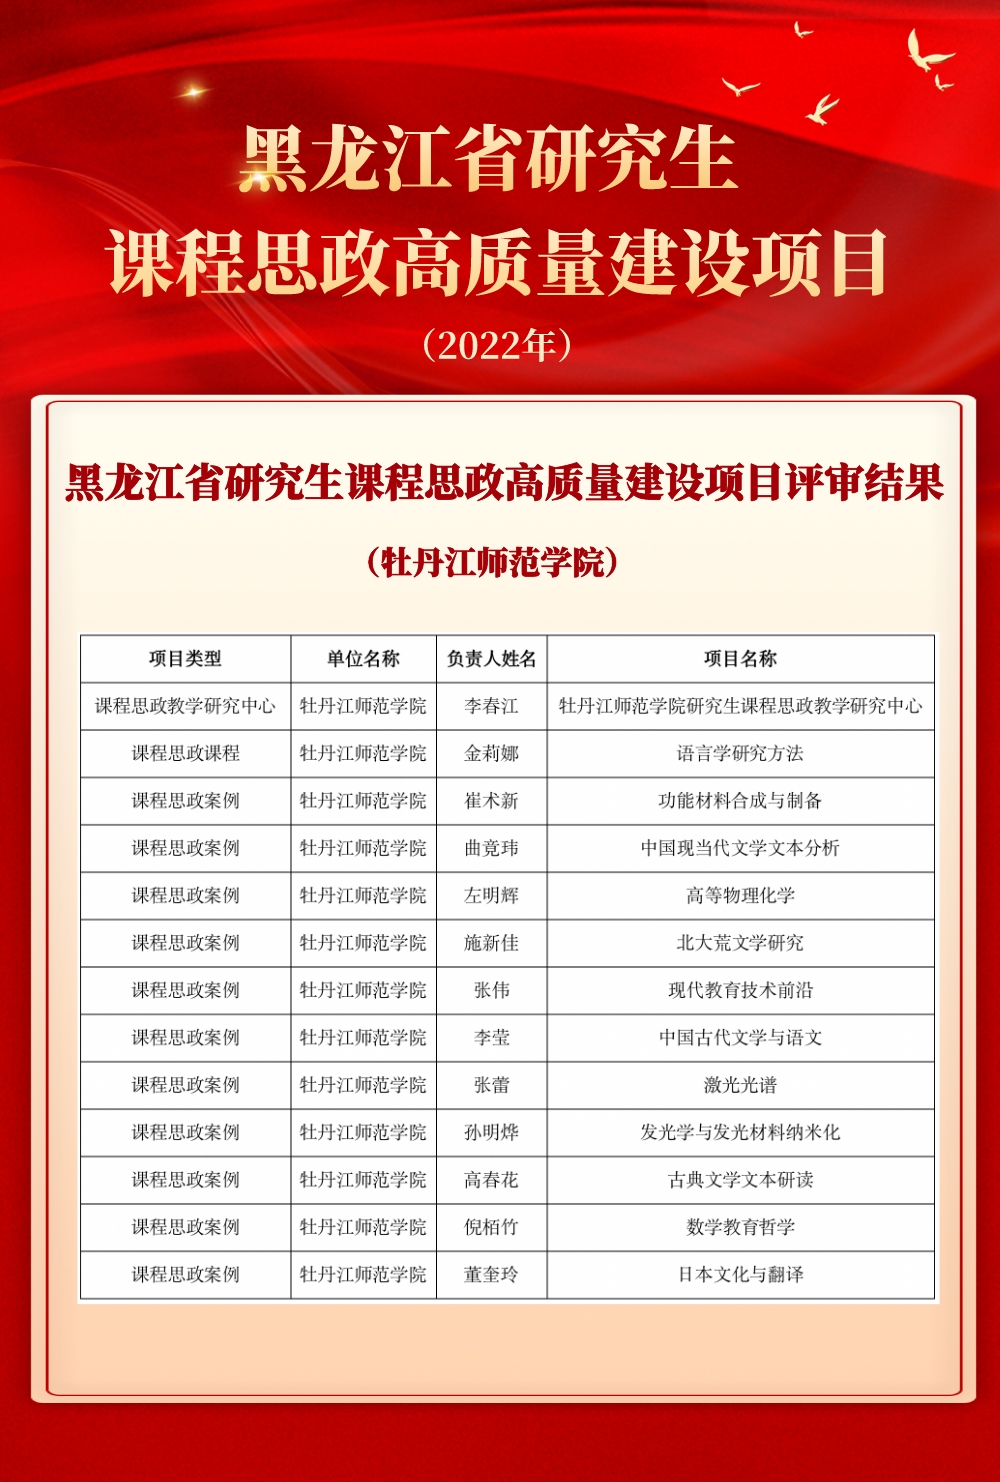 我校在黑龙江省研究生课程思政高质量建设项目评审中喜获佳绩